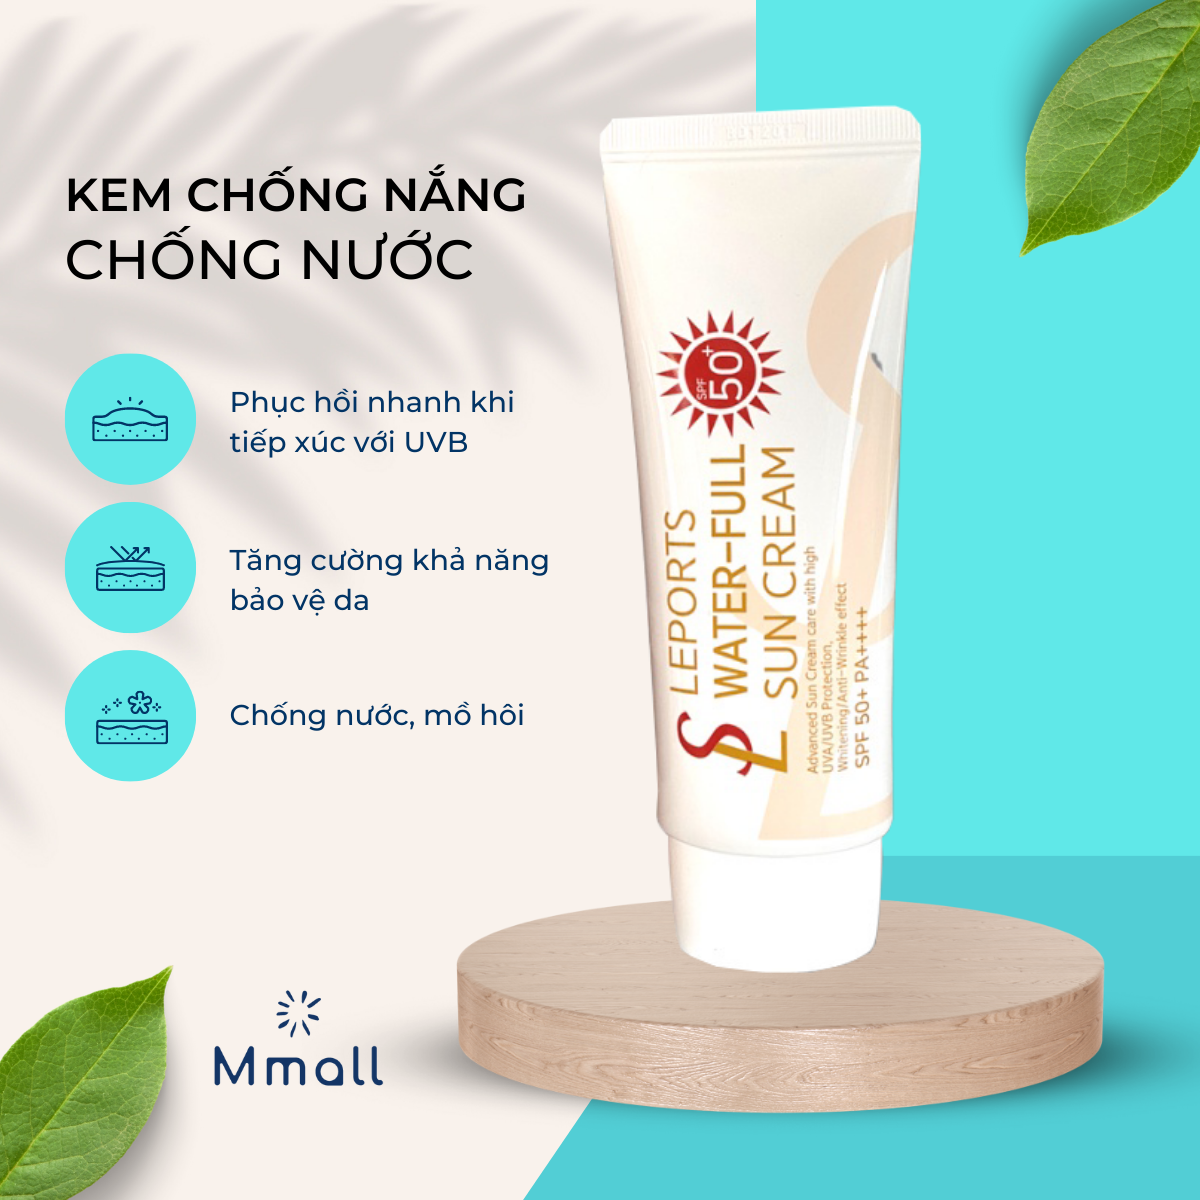 Kem chống nắng cho da mặt Hàn Quốc Smile Leader Sun Cream SPF50+ nâng tone cho da dầu mụn và da khô SL chính hãng 60ml